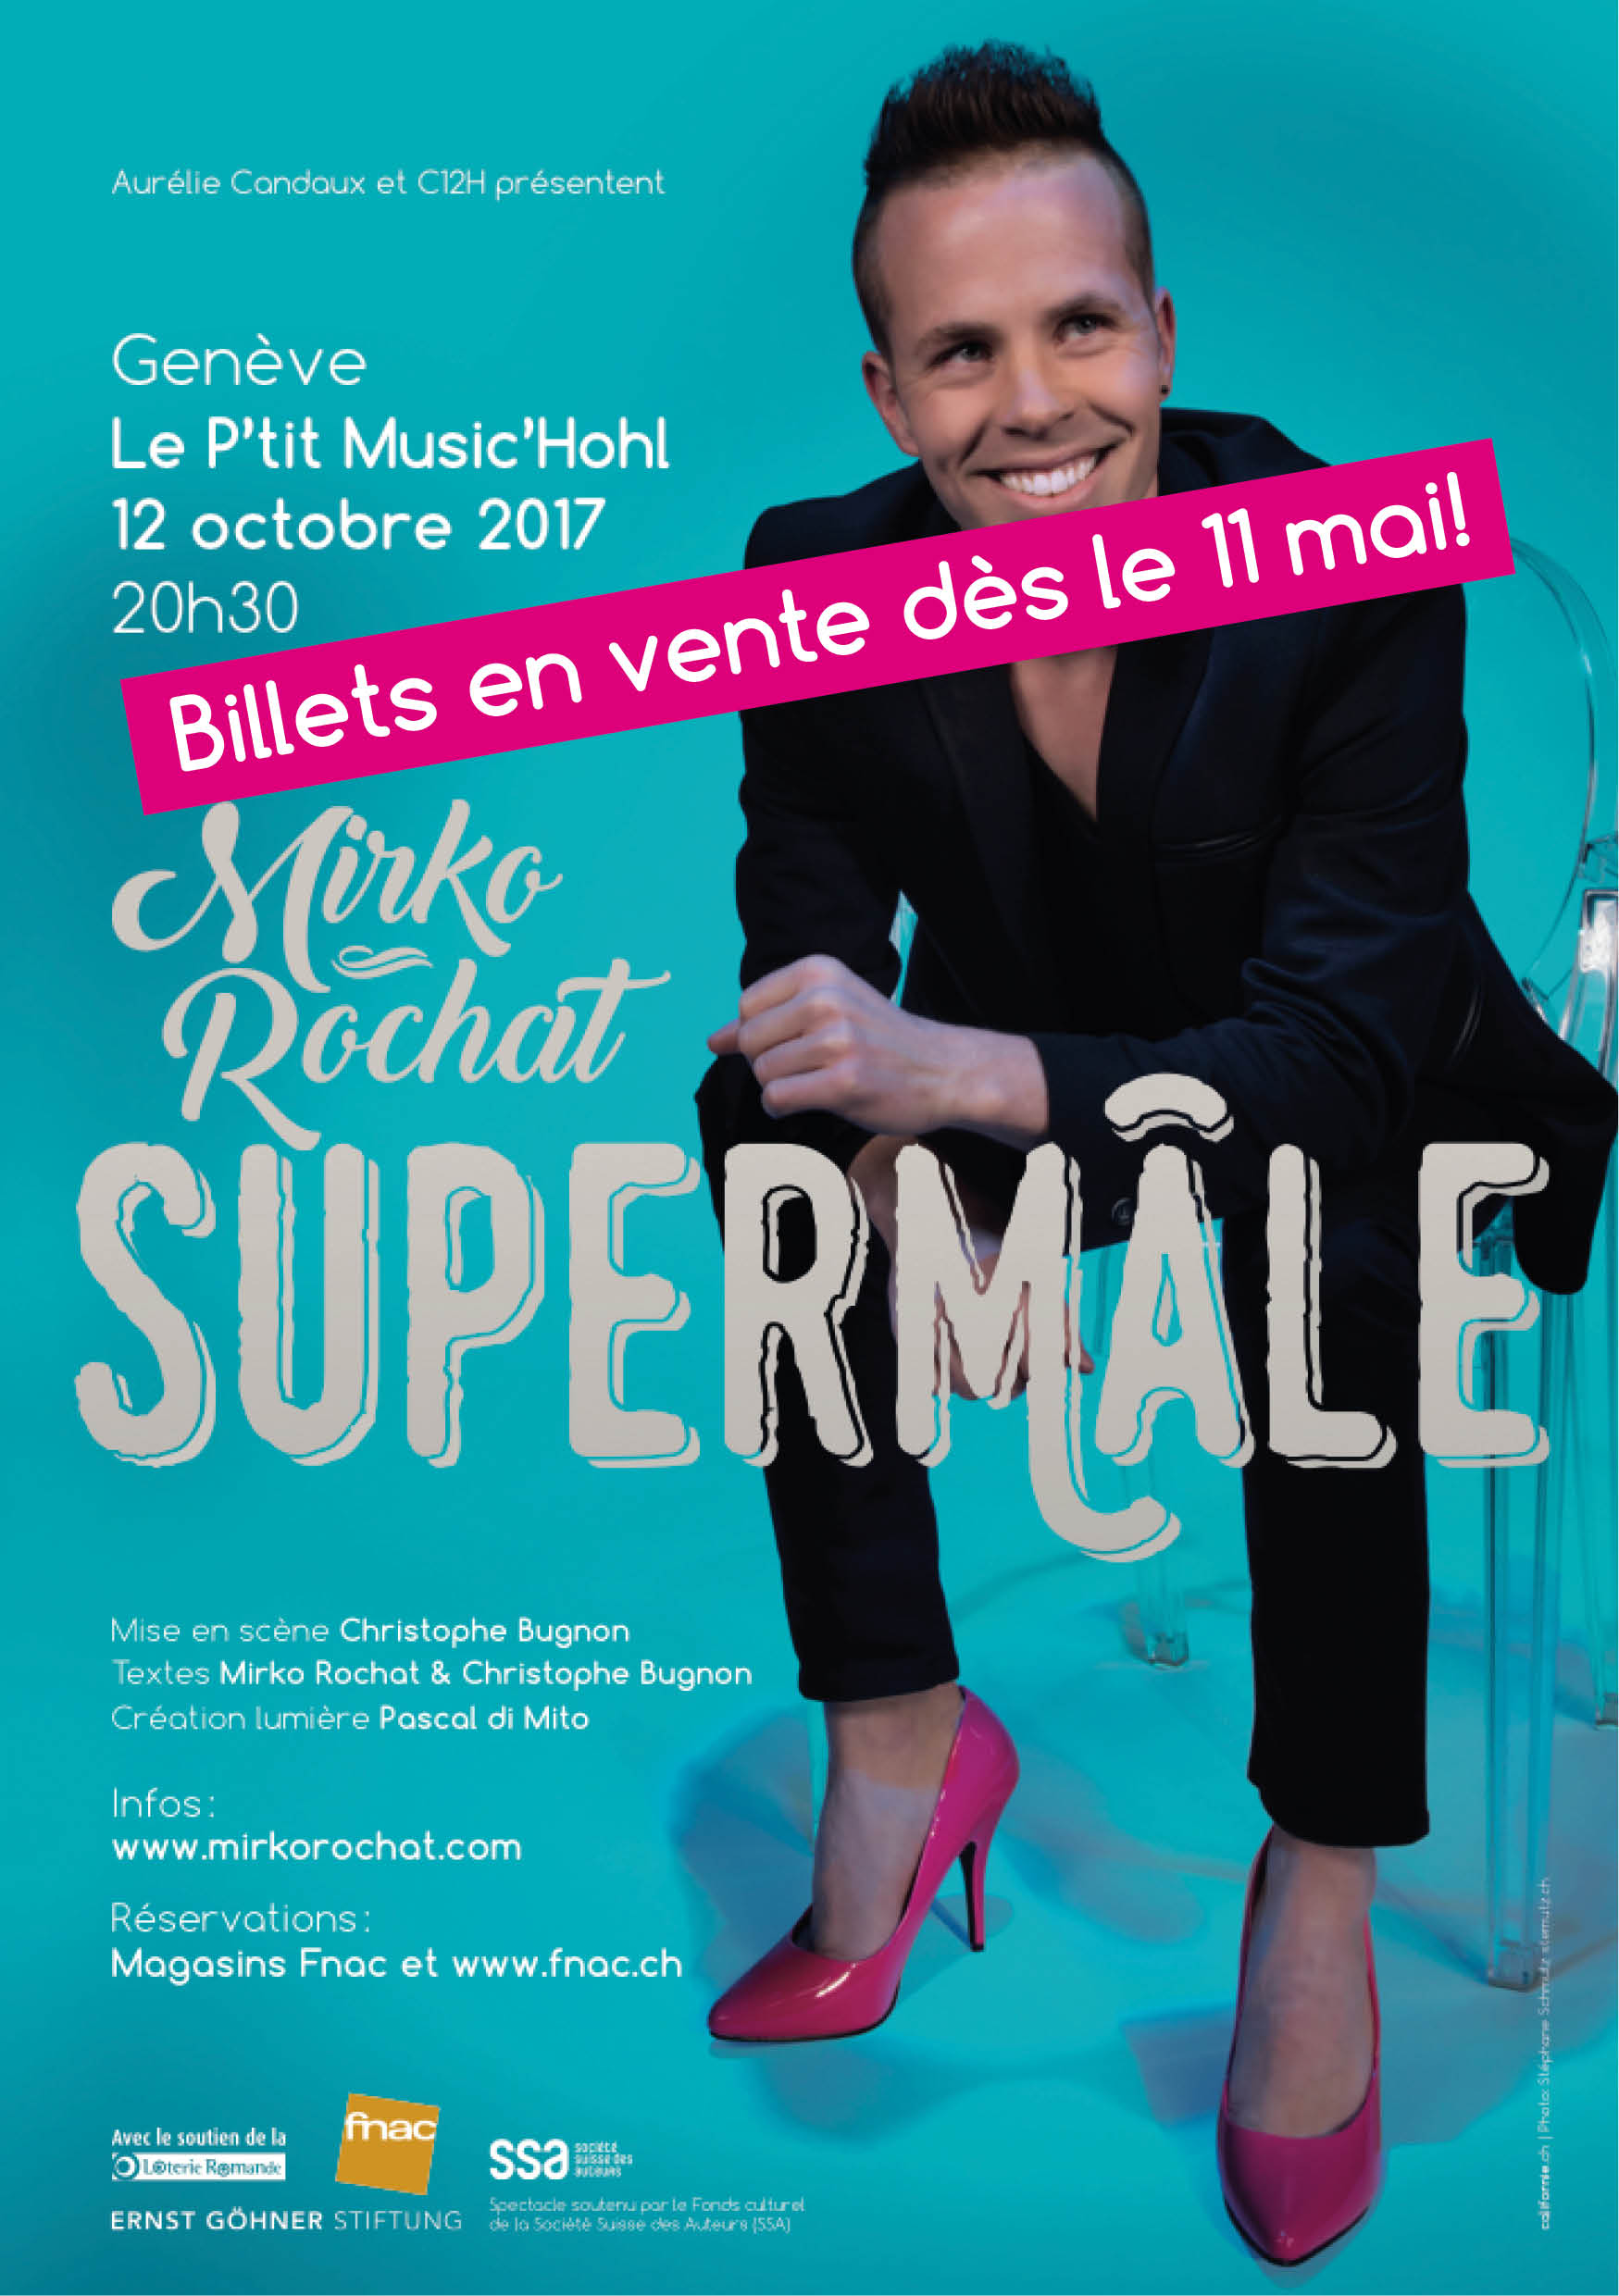 Mirko Rochat - Supermâle à Genève le 12 octobre 2017 au P'tit Music'Hohl - Billets en vente dès le 11 mai